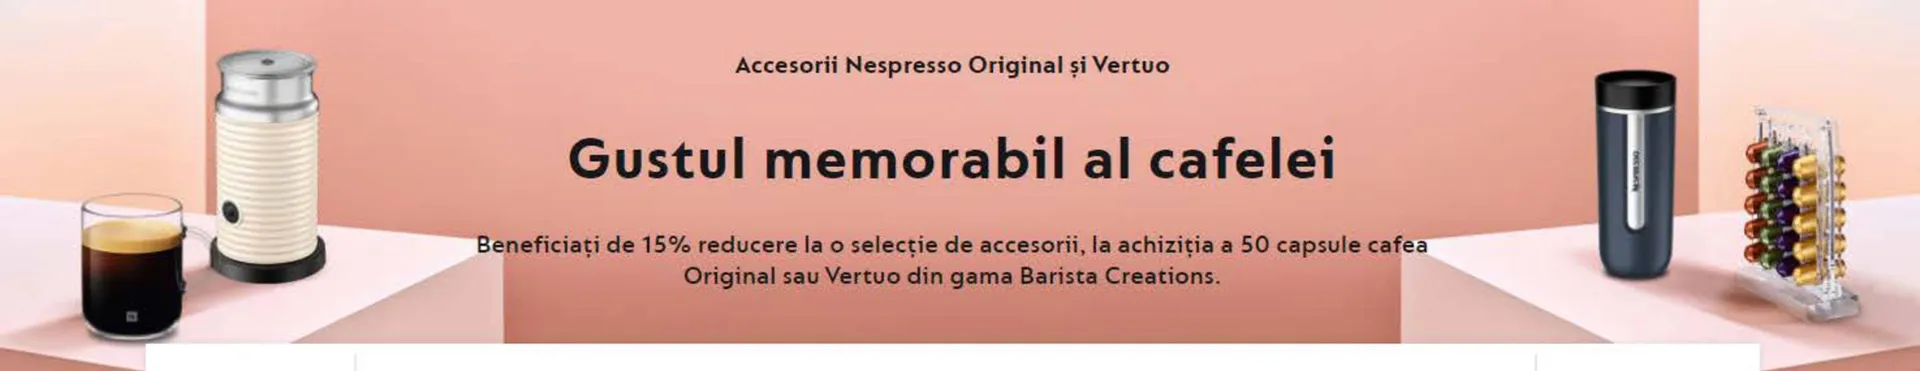 Nespresso catalog - 1